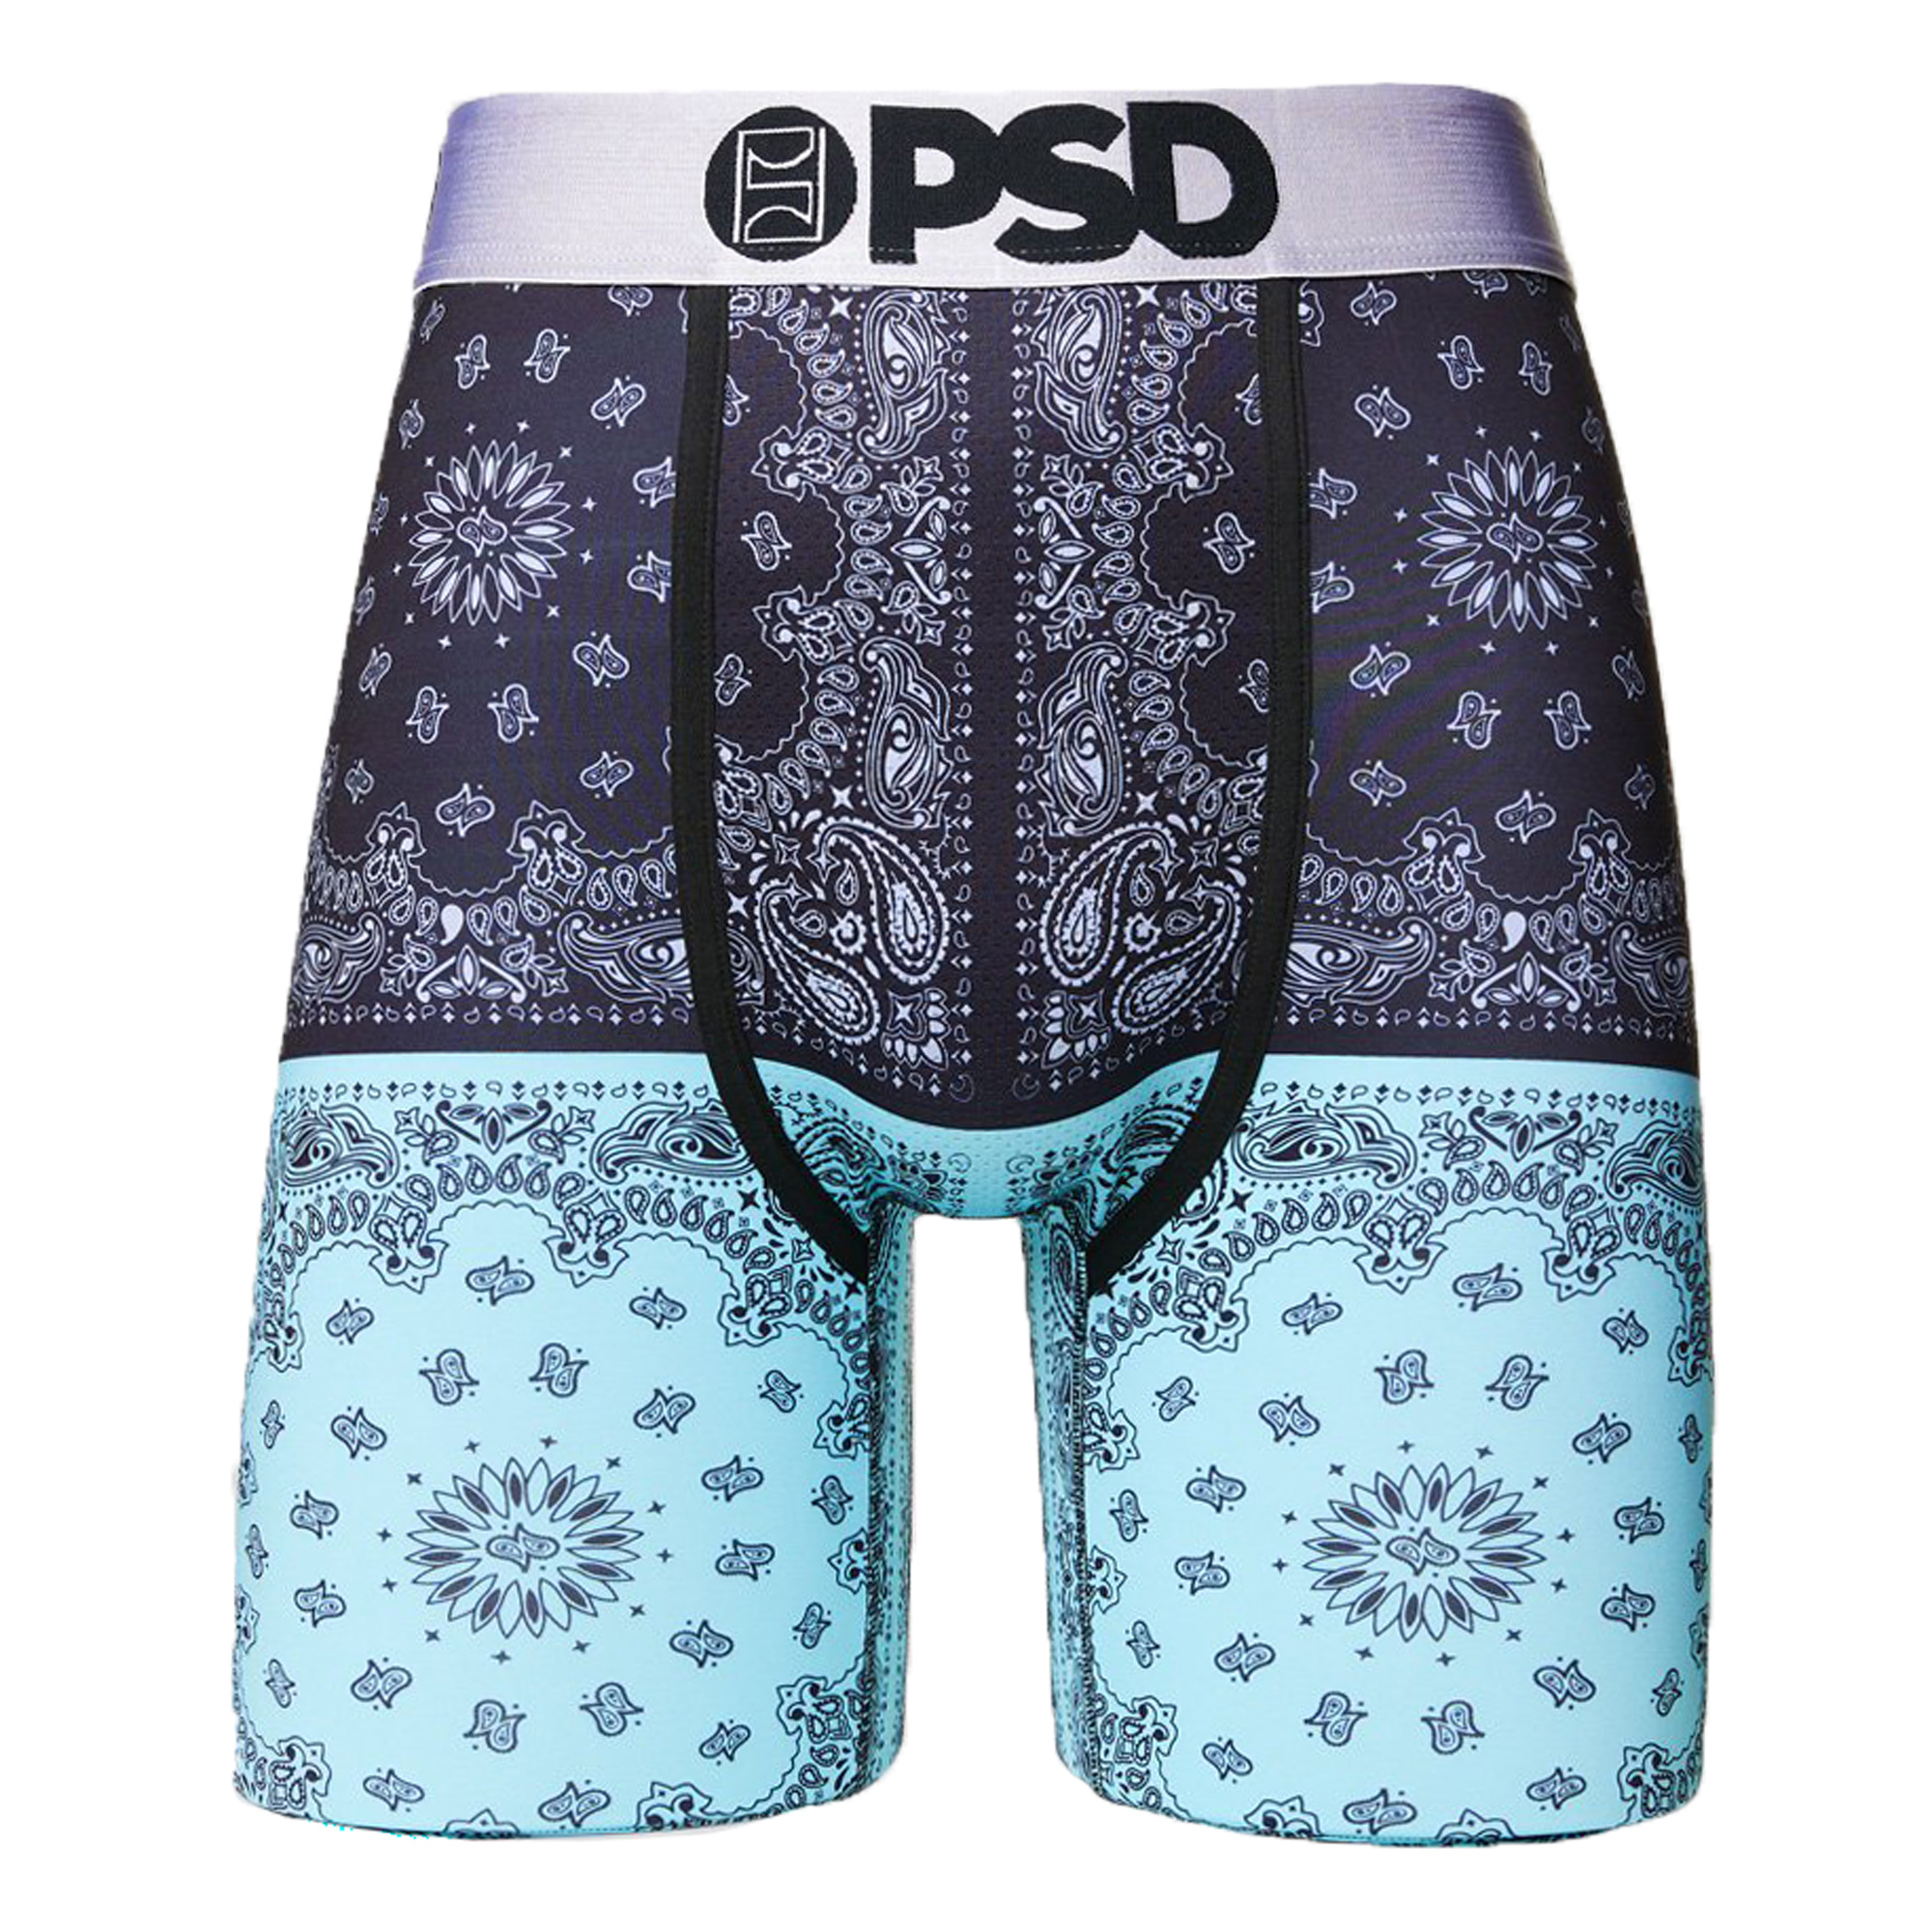 PSD - PSD Luxe 2Tone Boxer – Octane